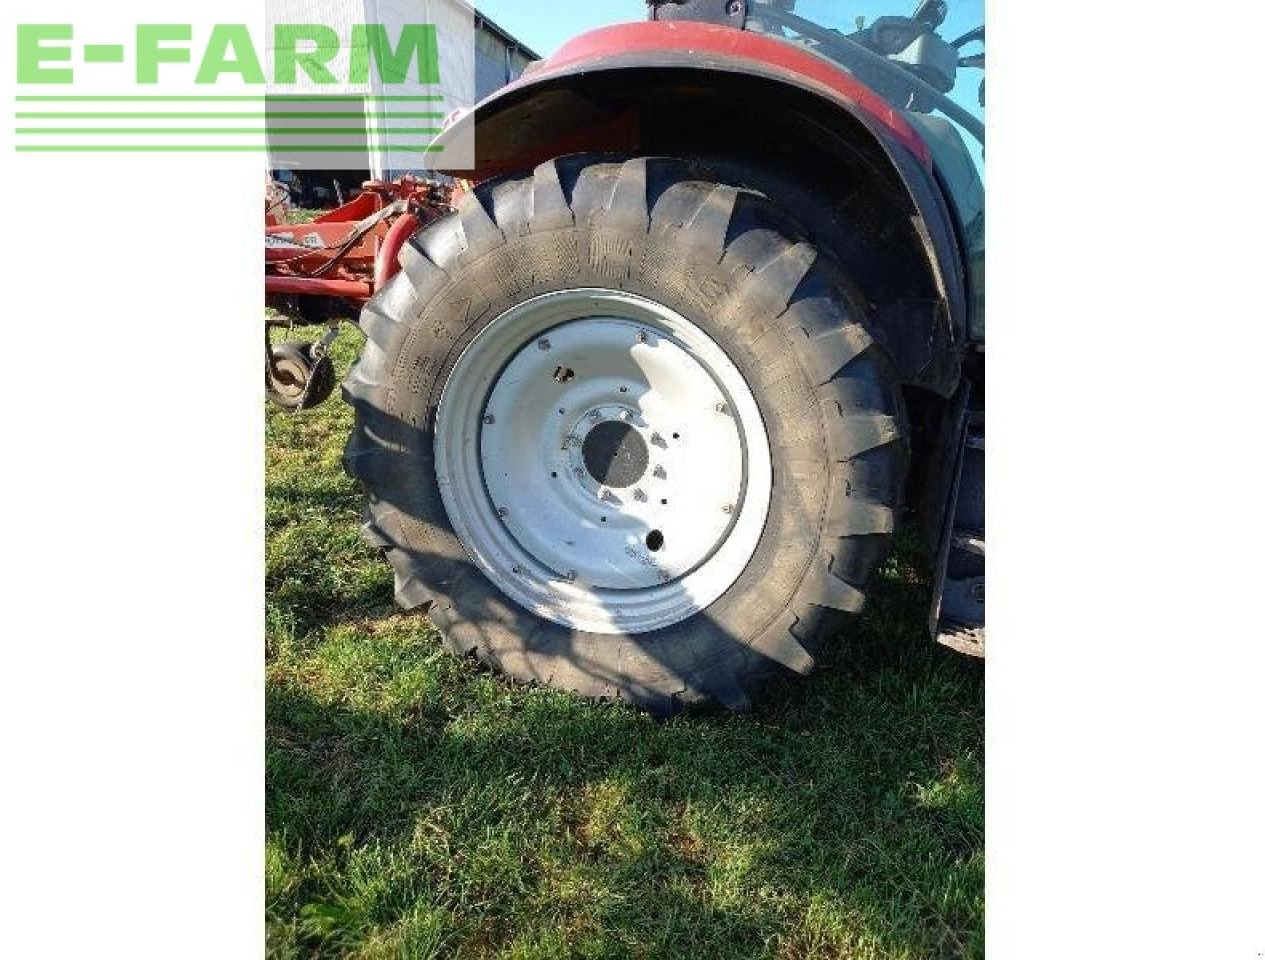 Farm tractor Case-IH marque case ih: picture 8